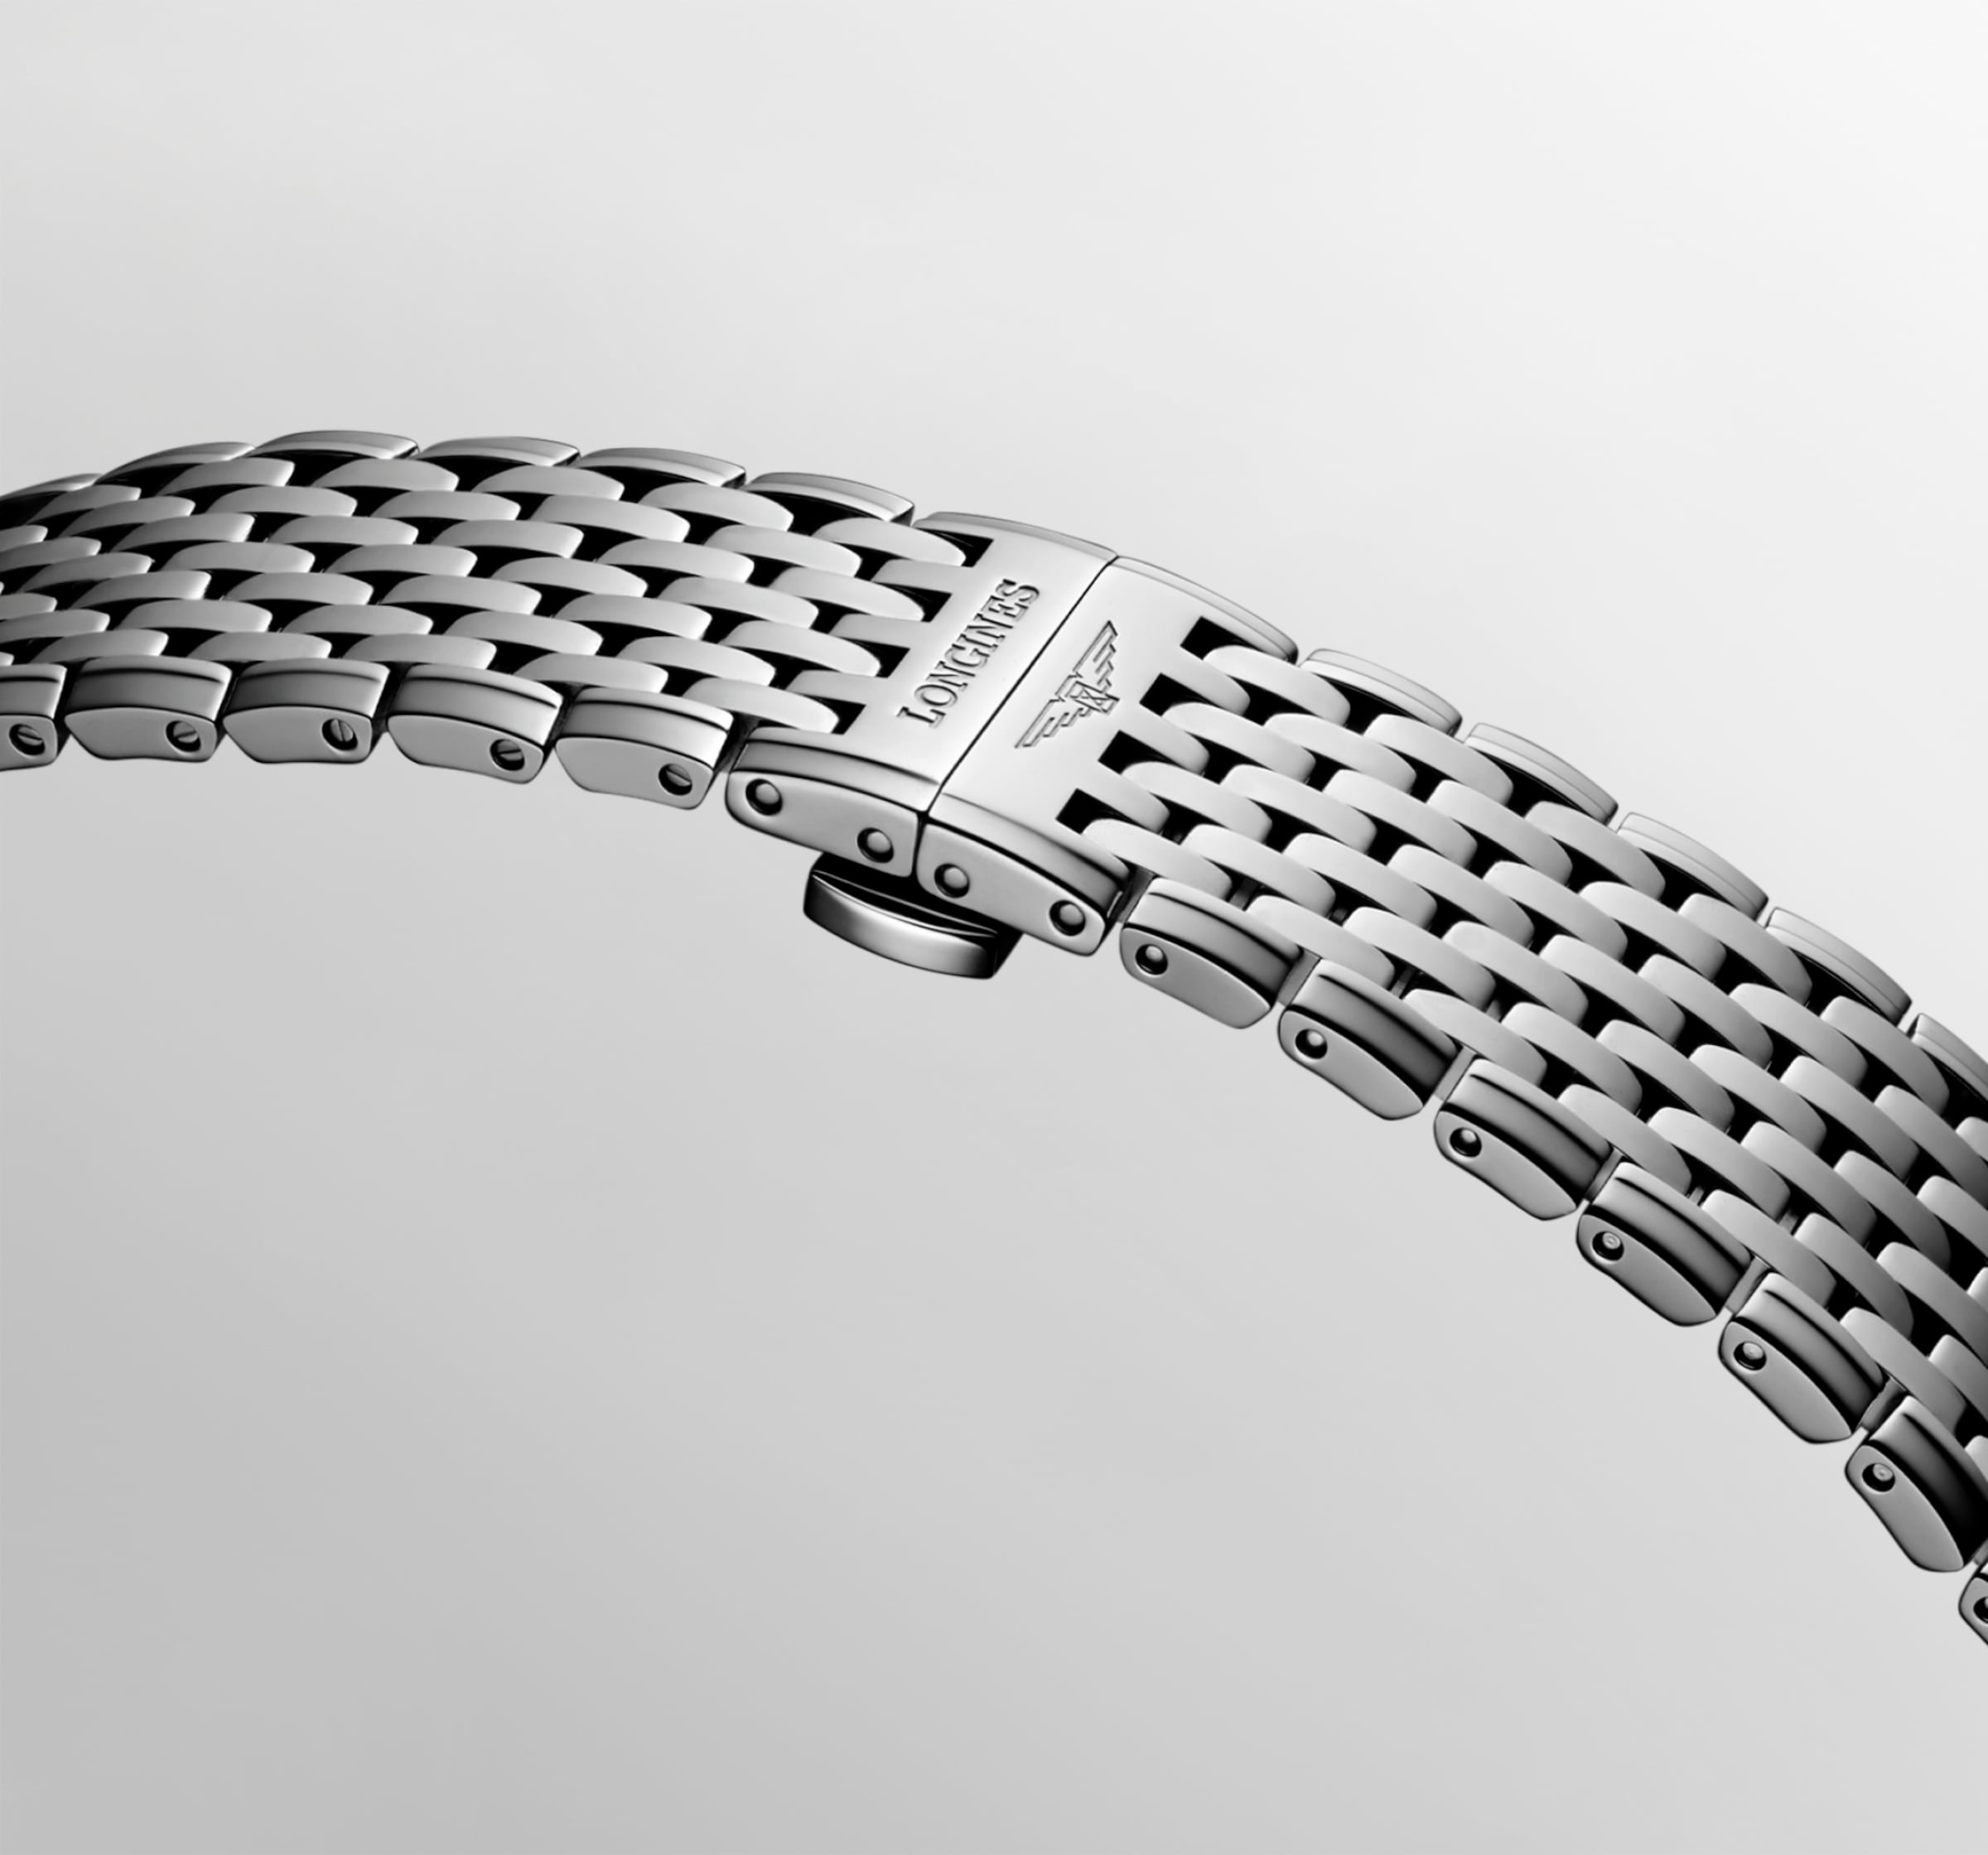 Longines LA GRANDE CLASSIQUE DE LONGINES Automatic Stainless steel Watch - L4.908.4.51.6